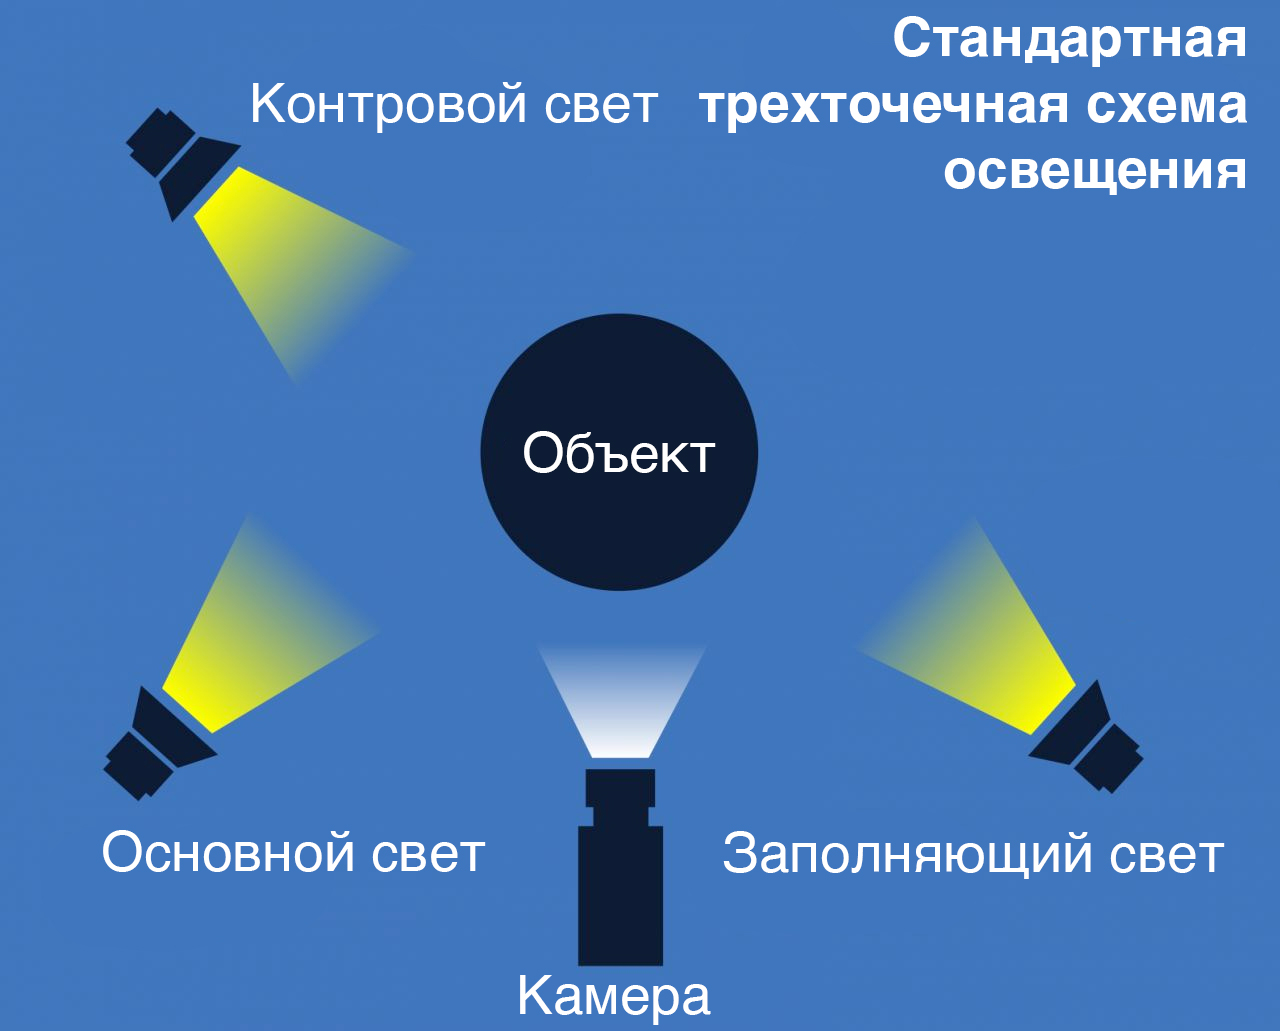 Какой свет называют точечным. Трехточечная схема освещения. Схемы студийного света. Источники света для видеосъемки. Виды освещения.